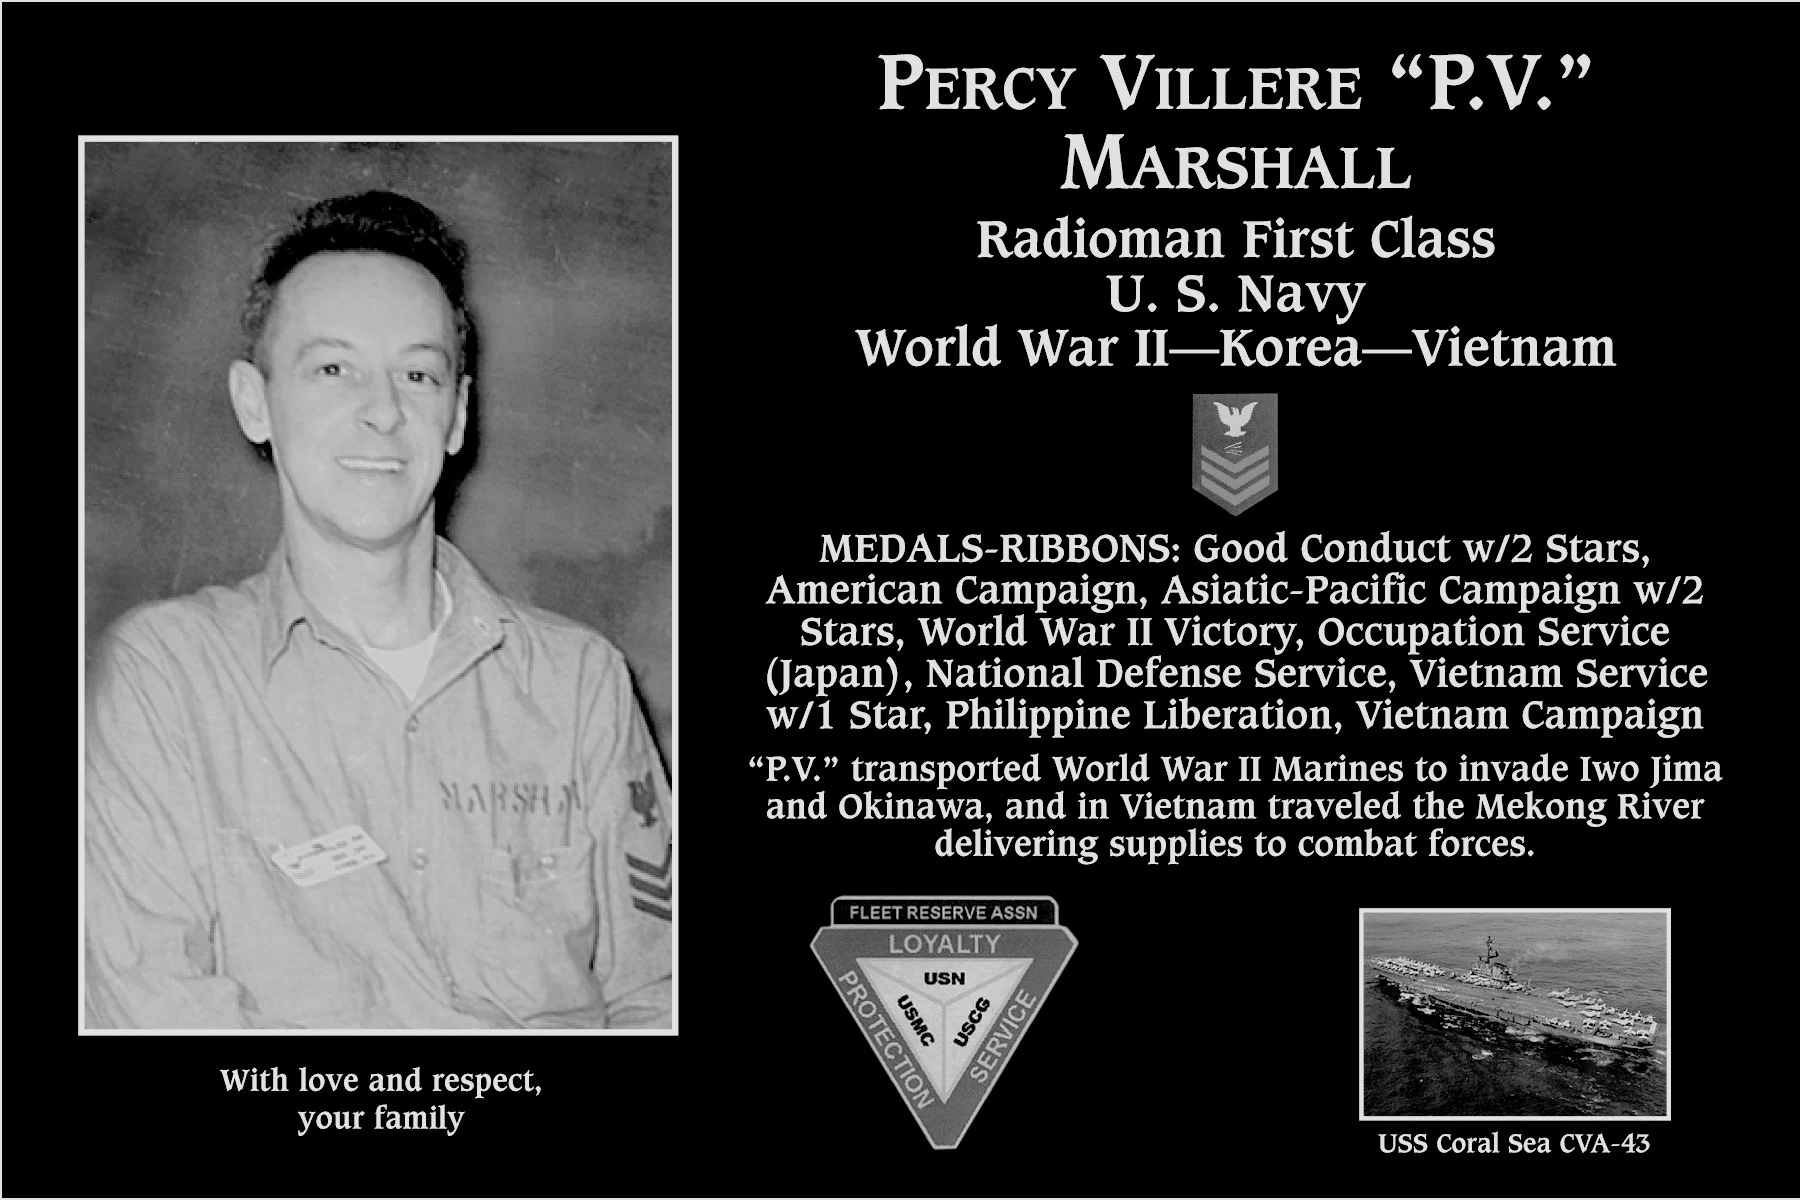 Percy Villere “P.V.” Marshall